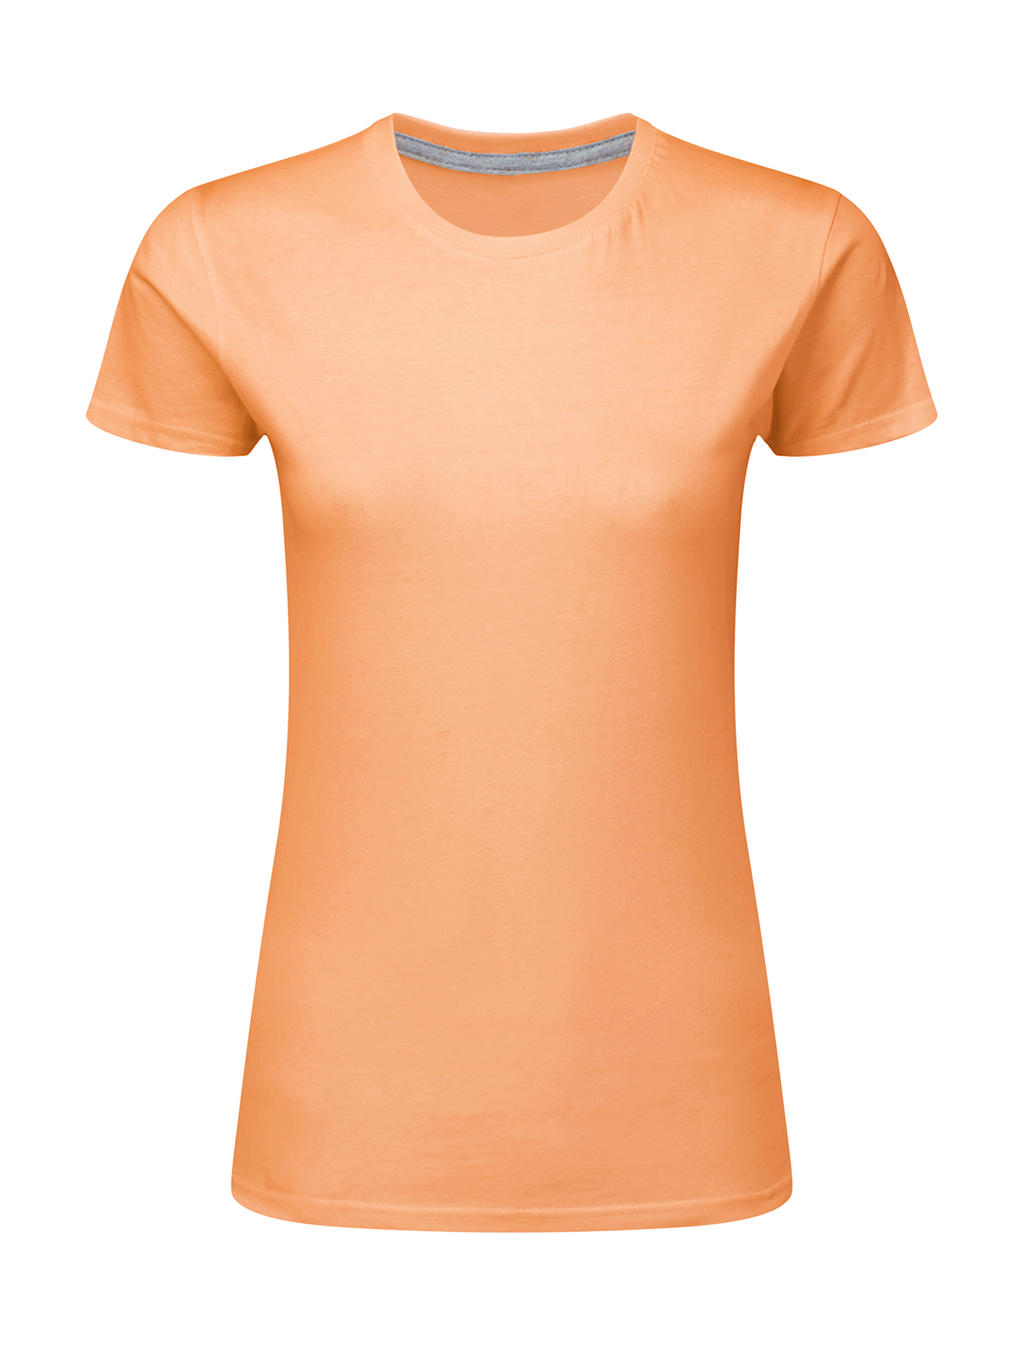 Dokonale potlačiteľné dámske tričko bez štítku - cantaloupe